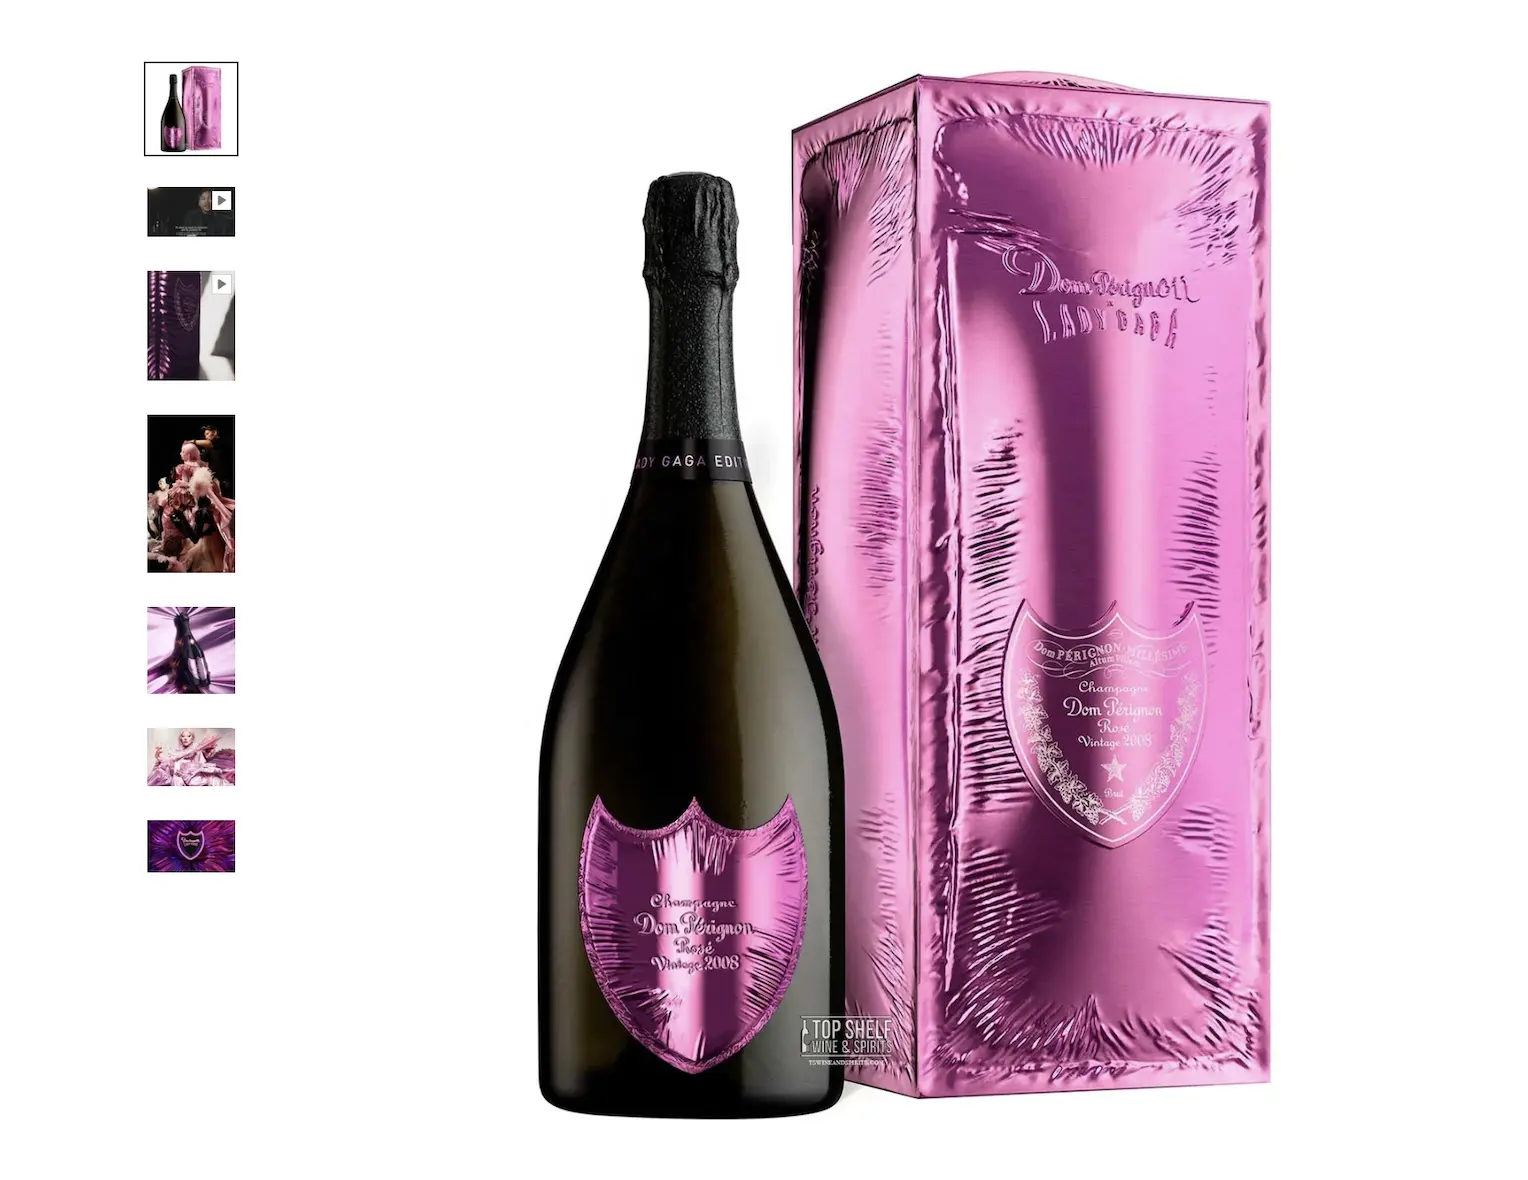 Commercio all'ingrosso Dom Perignon prodotti a prezzi di fabbrica all'ingrosso dom perignon champagne prezzo all'ingrosso in paesi europei